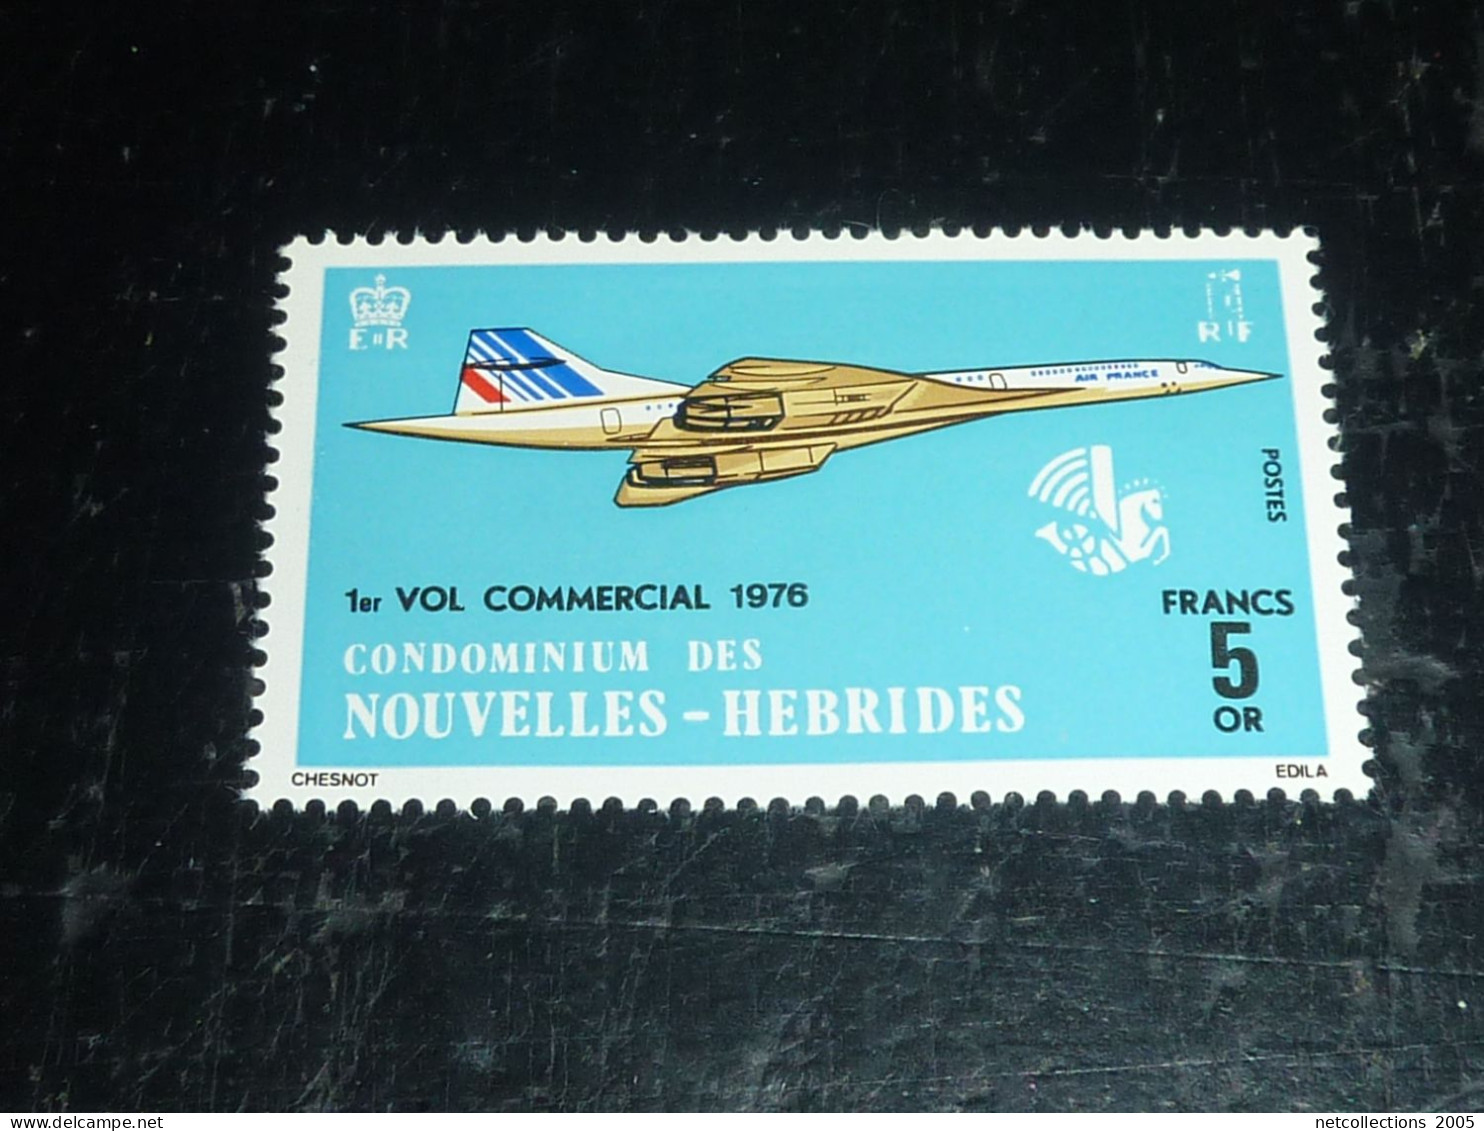 CONDOMINIUM DES NOUVELLES HEBRIDES 1976 N°424 " CONCORDE " 1 VOL COMMERCIAL 1976 - NEUFS SANS GOMME (20/09) - Collections, Lots & Series